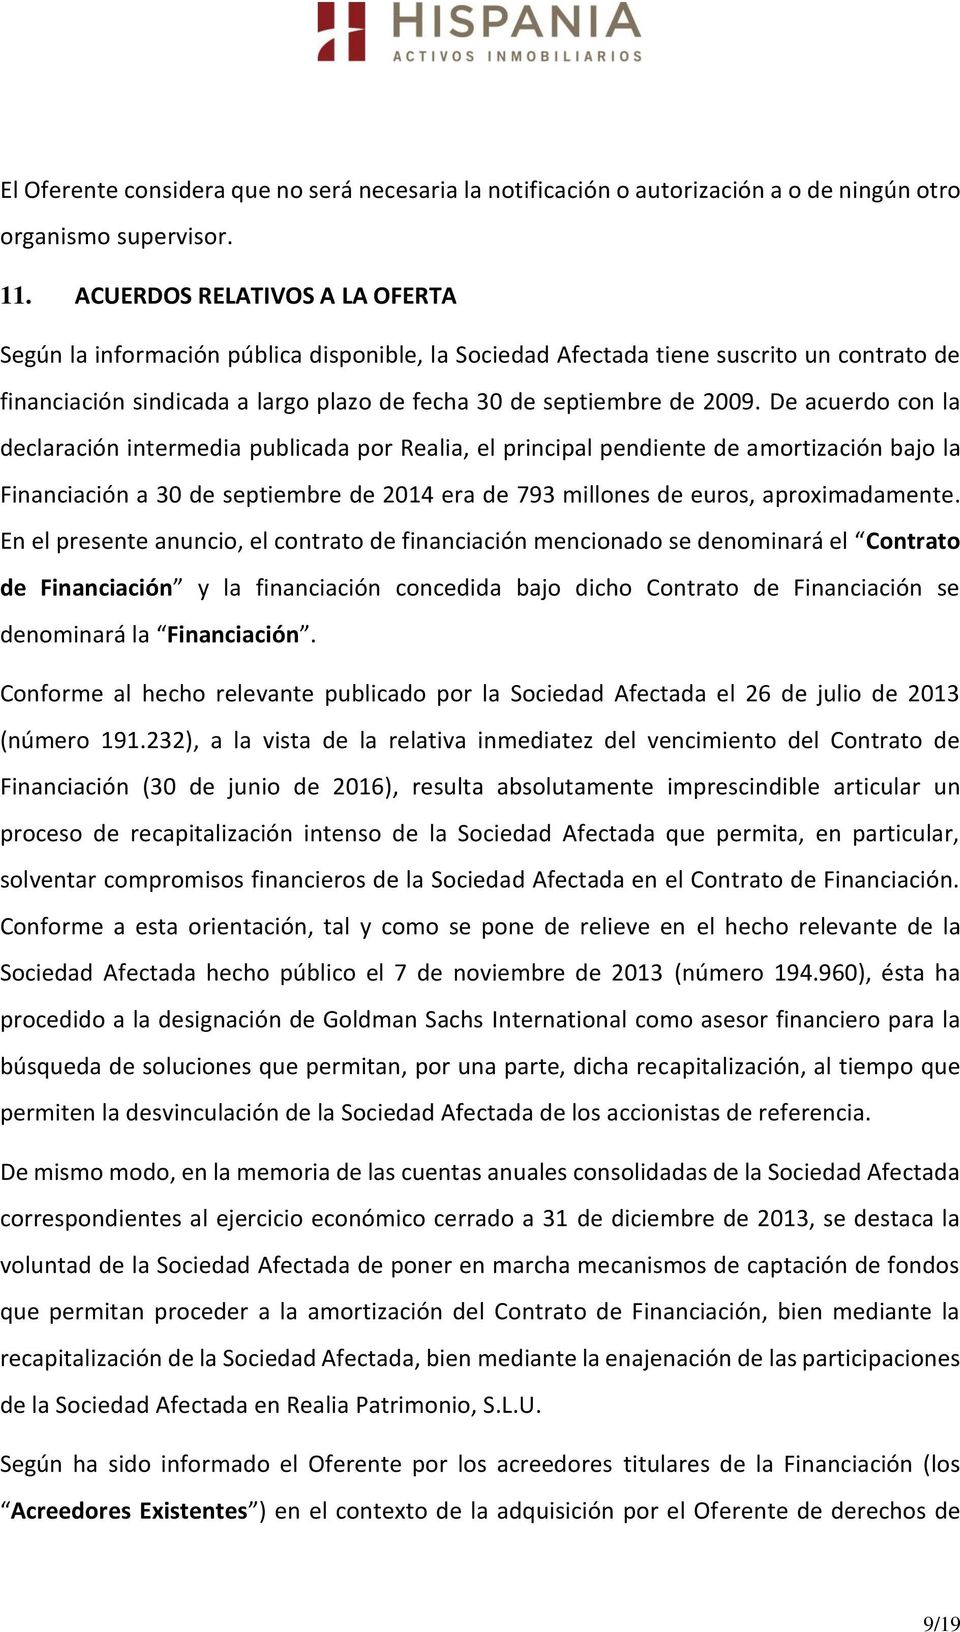 De acuerdo con la declaración intermedia publicada por Realia, el principal pendiente de amortización bajo la Financiación a 30 de septiembre de 2014 era de 793 millones de euros, aproximadamente.